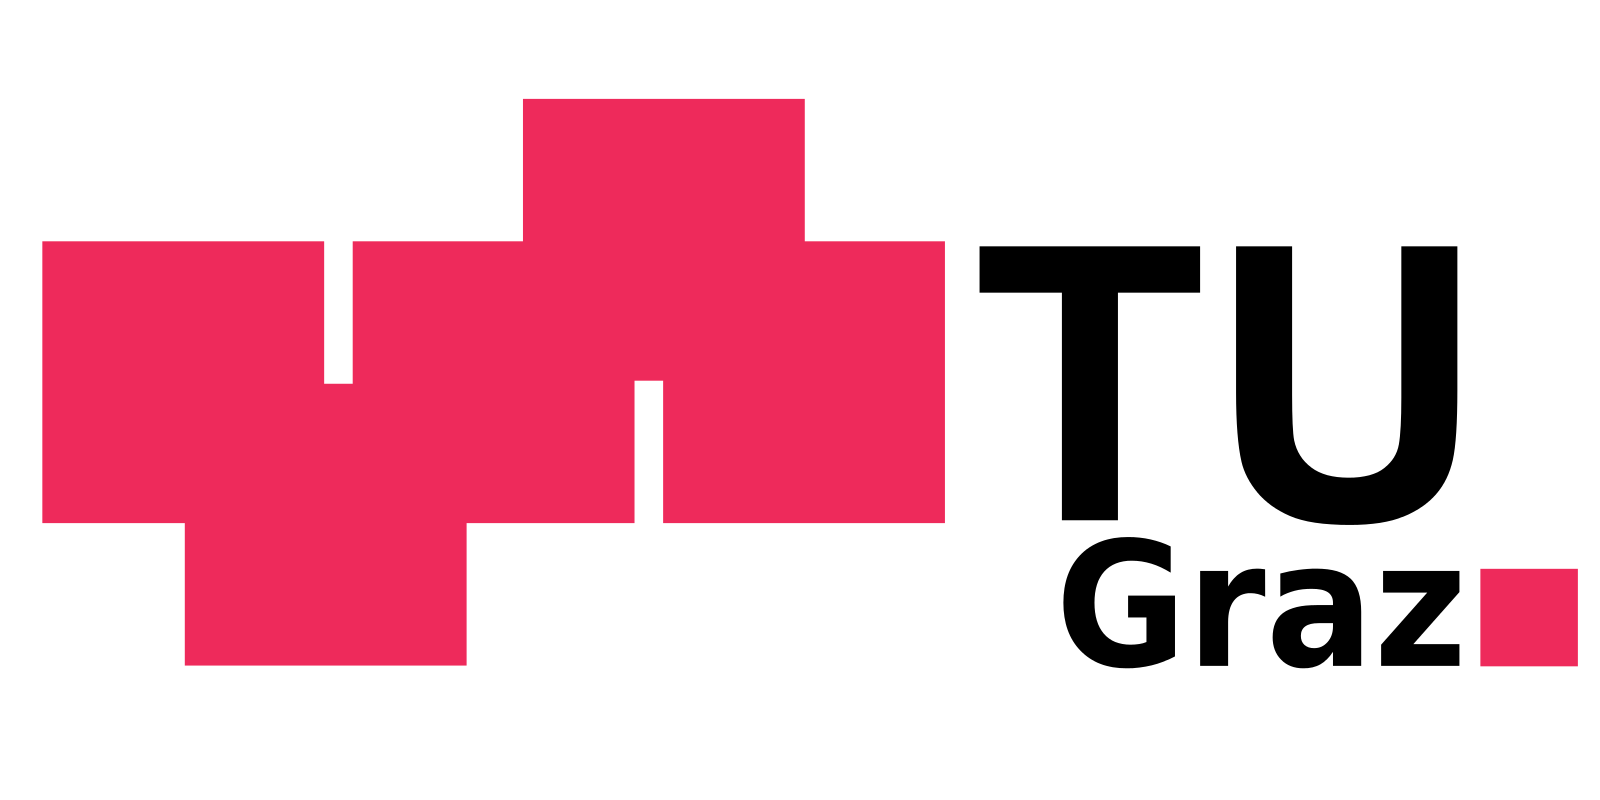 TU Graz logo